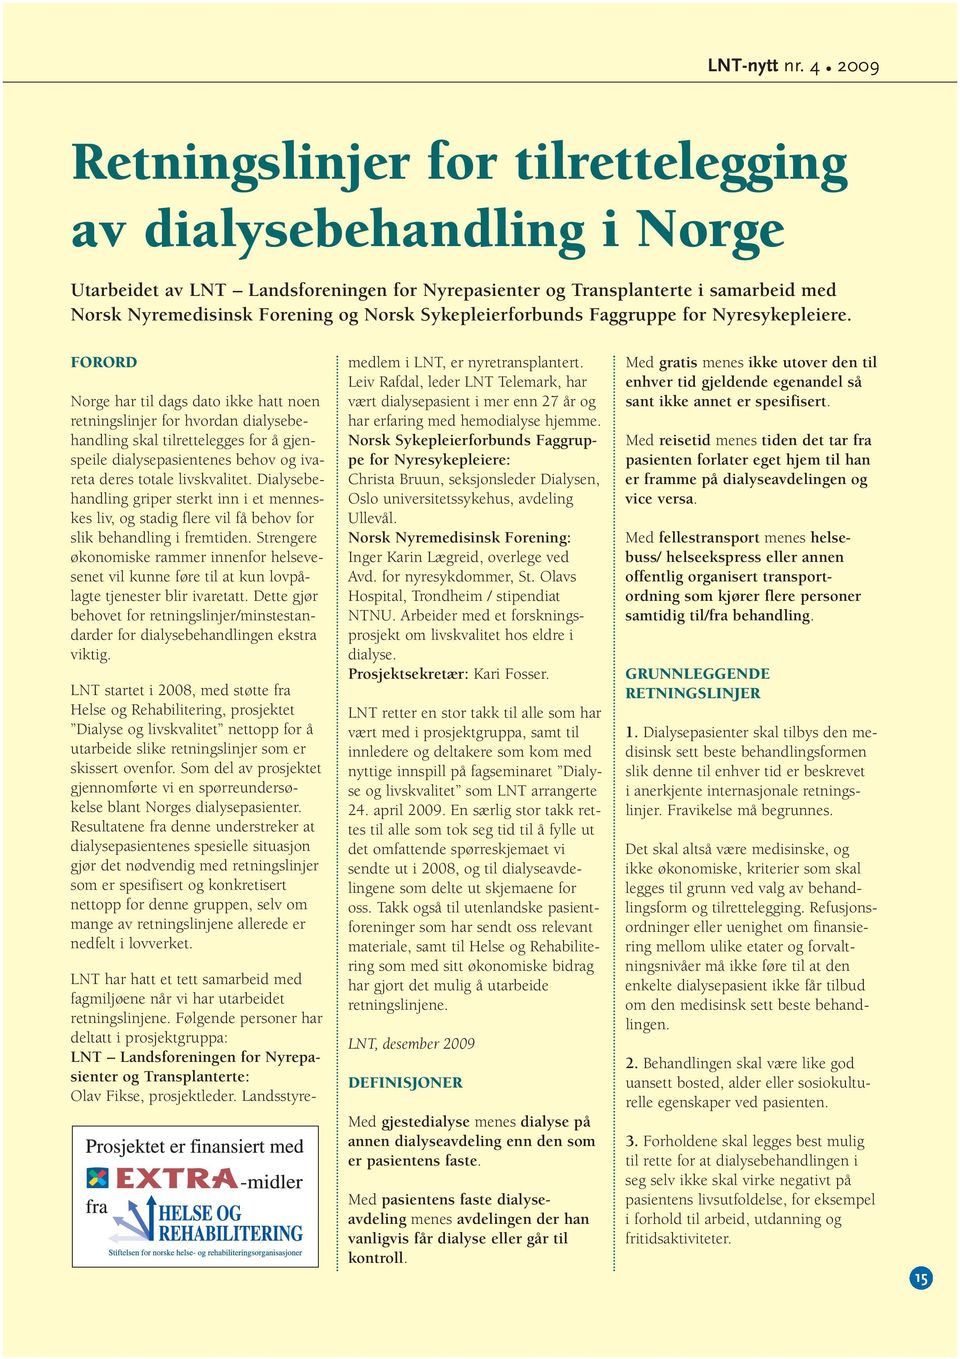 FORORD Norge har til dags dato ikke hatt noen retningslinjer for hvordan dialysebehandling skal tilrettelegges for å gjenspeile dialysepasientenes behov og ivareta deres totale livskvalitet.